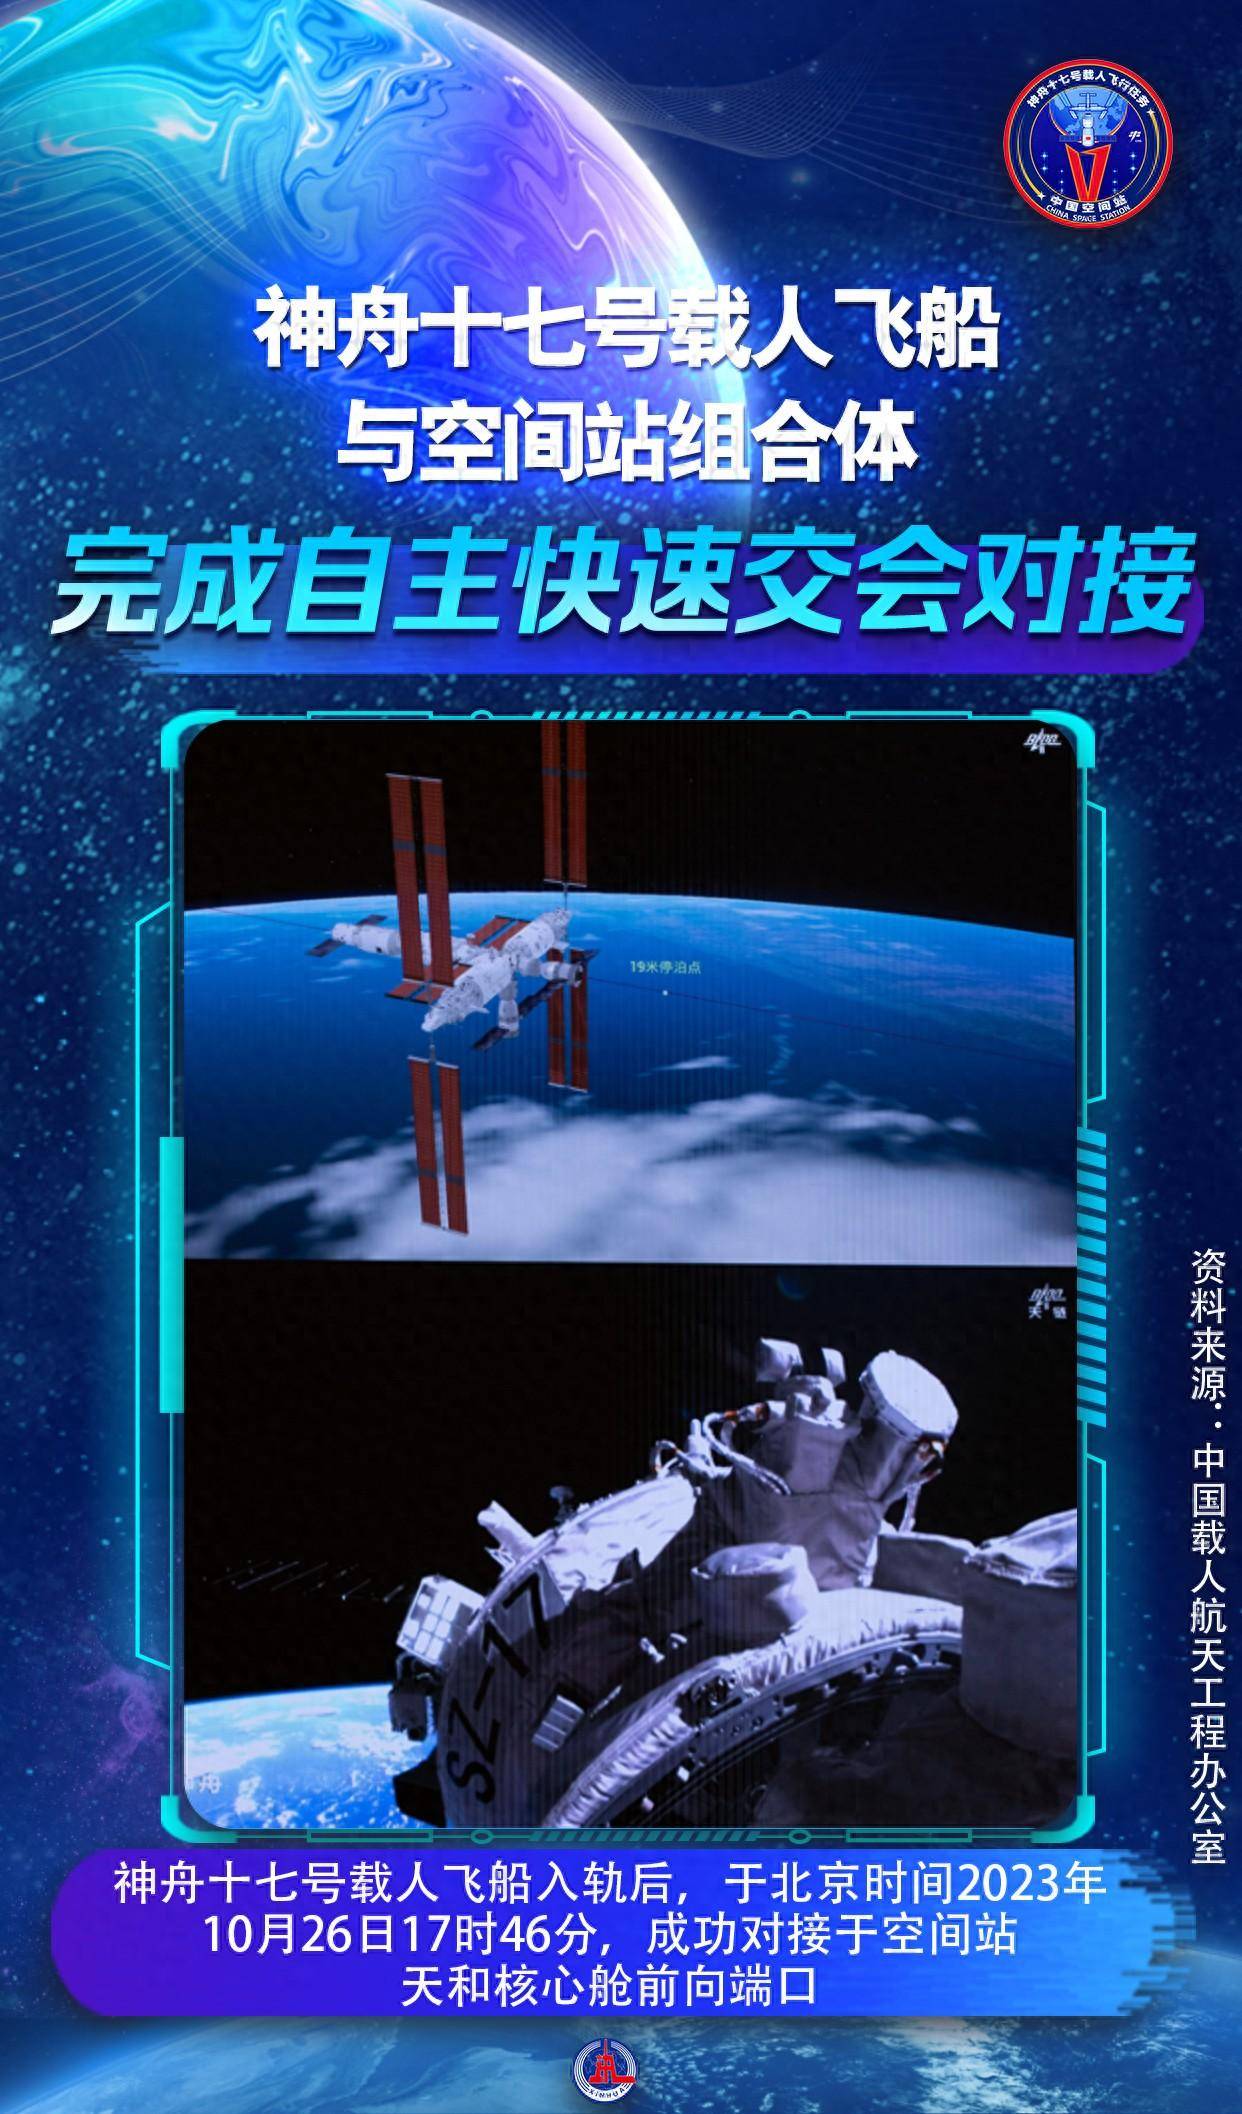 中国向天宫发射神舟十七号任务火箭